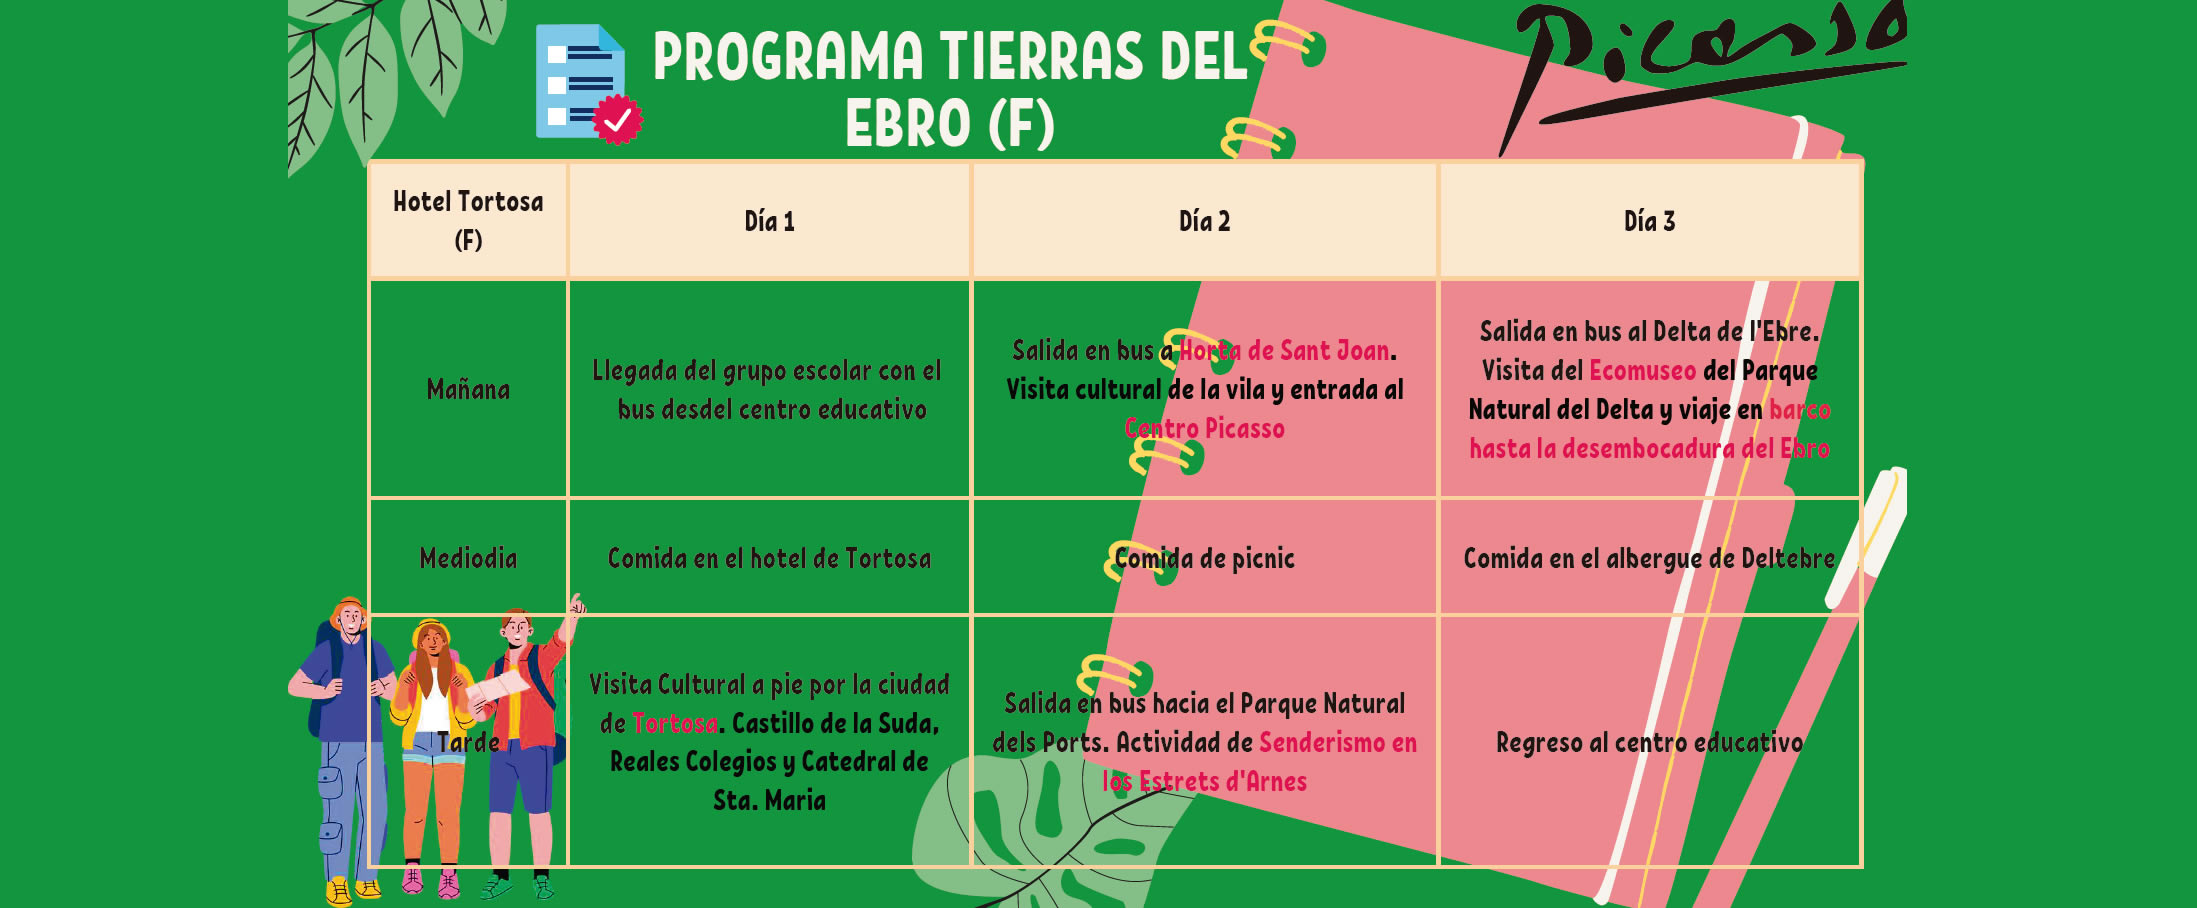 Programa escolar Tierras del Ebro (F)